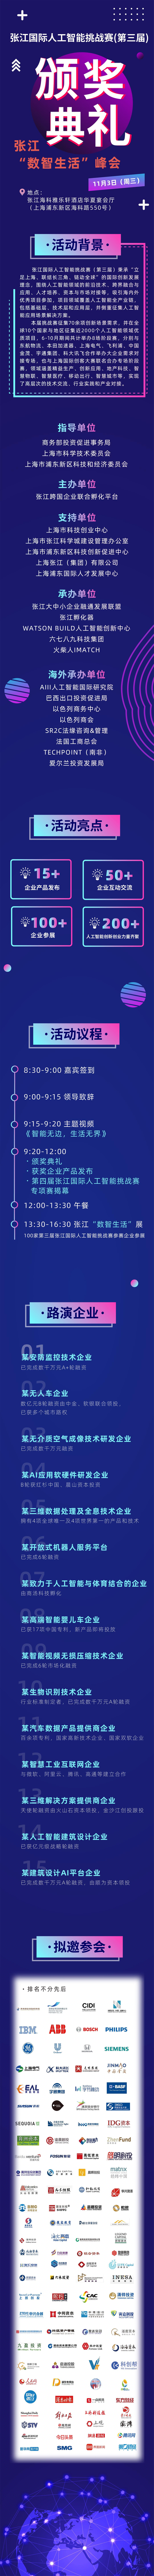 张江国际人工智能挑战赛长图文-v2.jpg